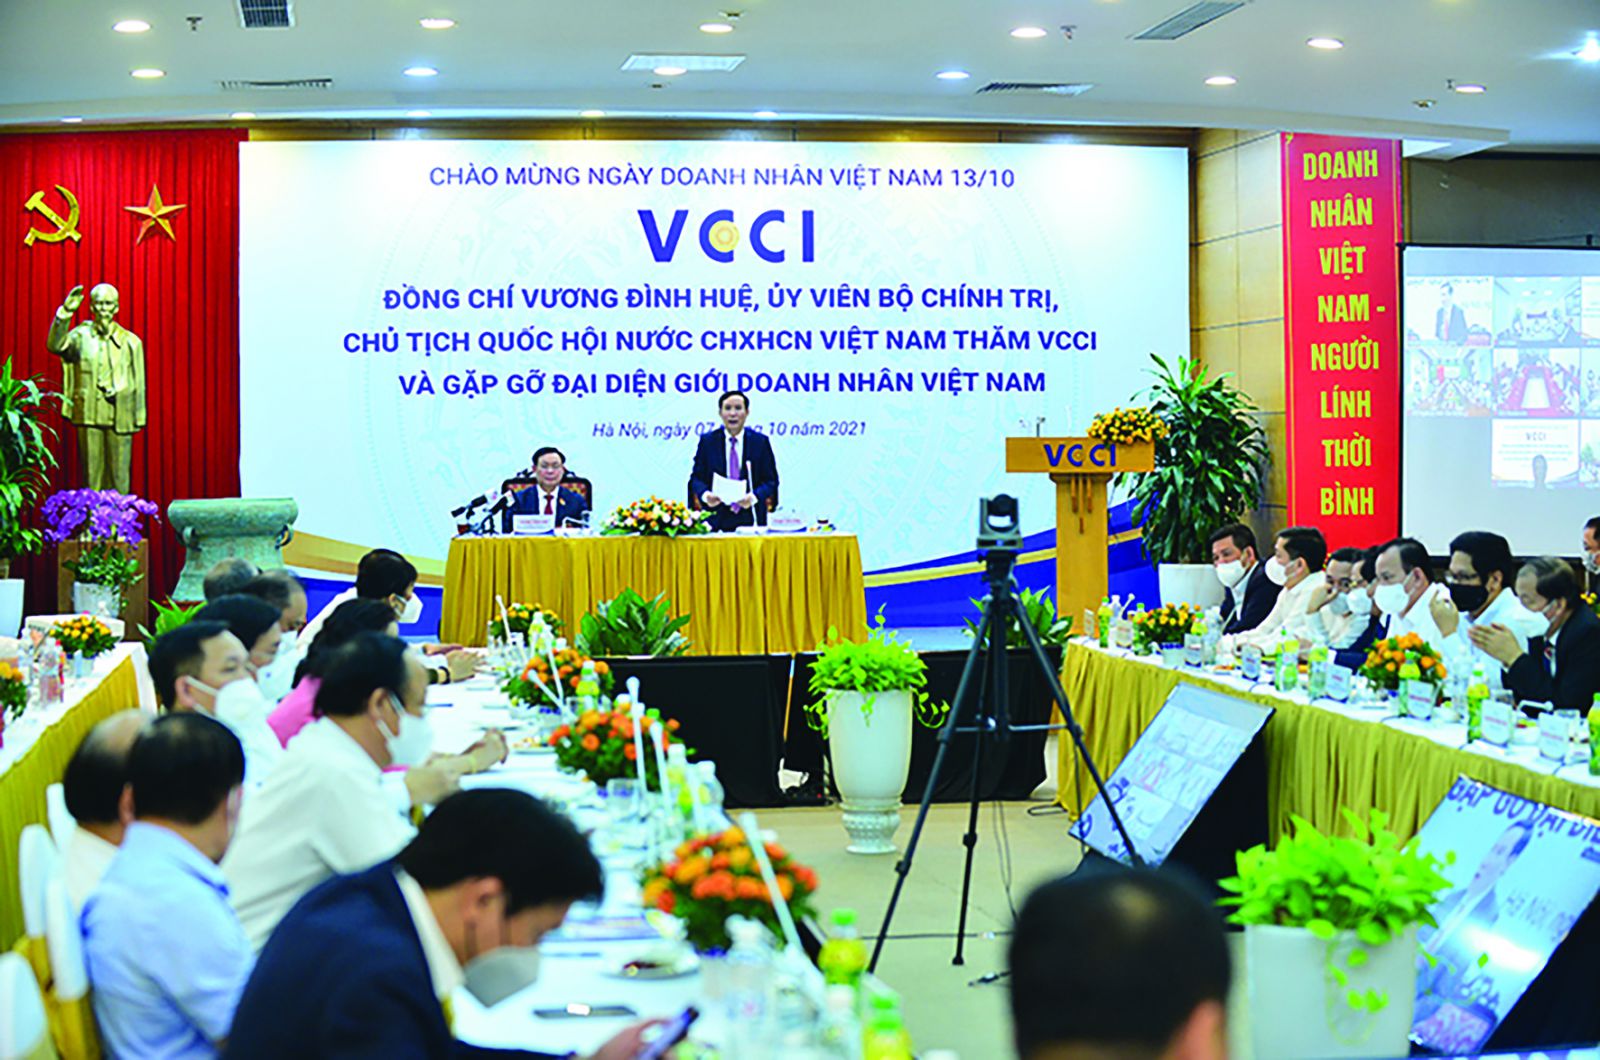  Nhân kỷ niệm ngày doanh nhân Việt Nam 13/10, Chủ tịch Quốc hội Vương Đình Huệ đã tới thăm VCCI và gặp gỡ đại diện giới doanh nhân Việt Nam 